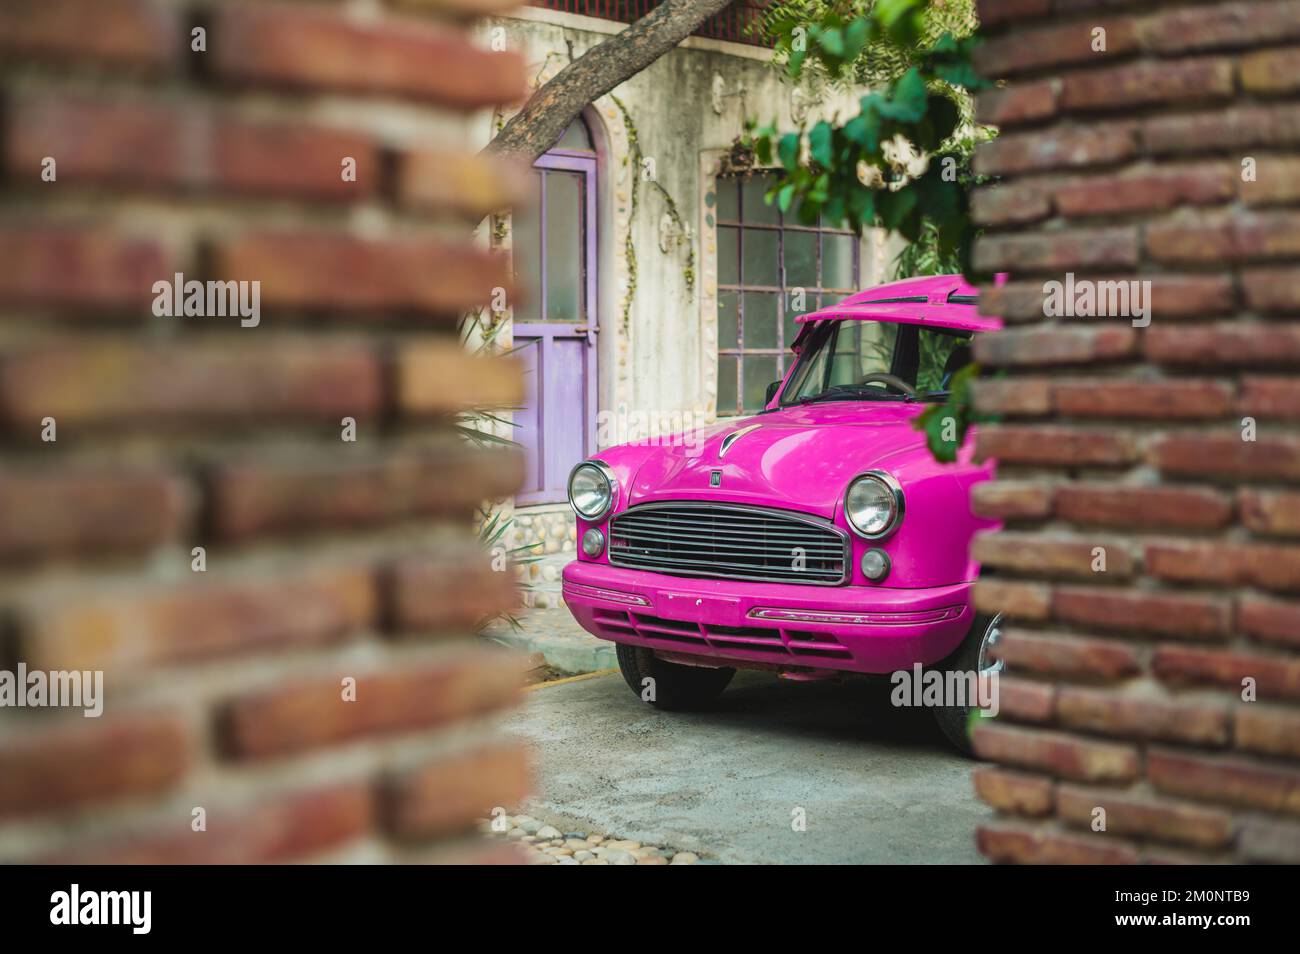 Une voiture d'époque violette dans la rue. Gurugram, Inde Banque D'Images